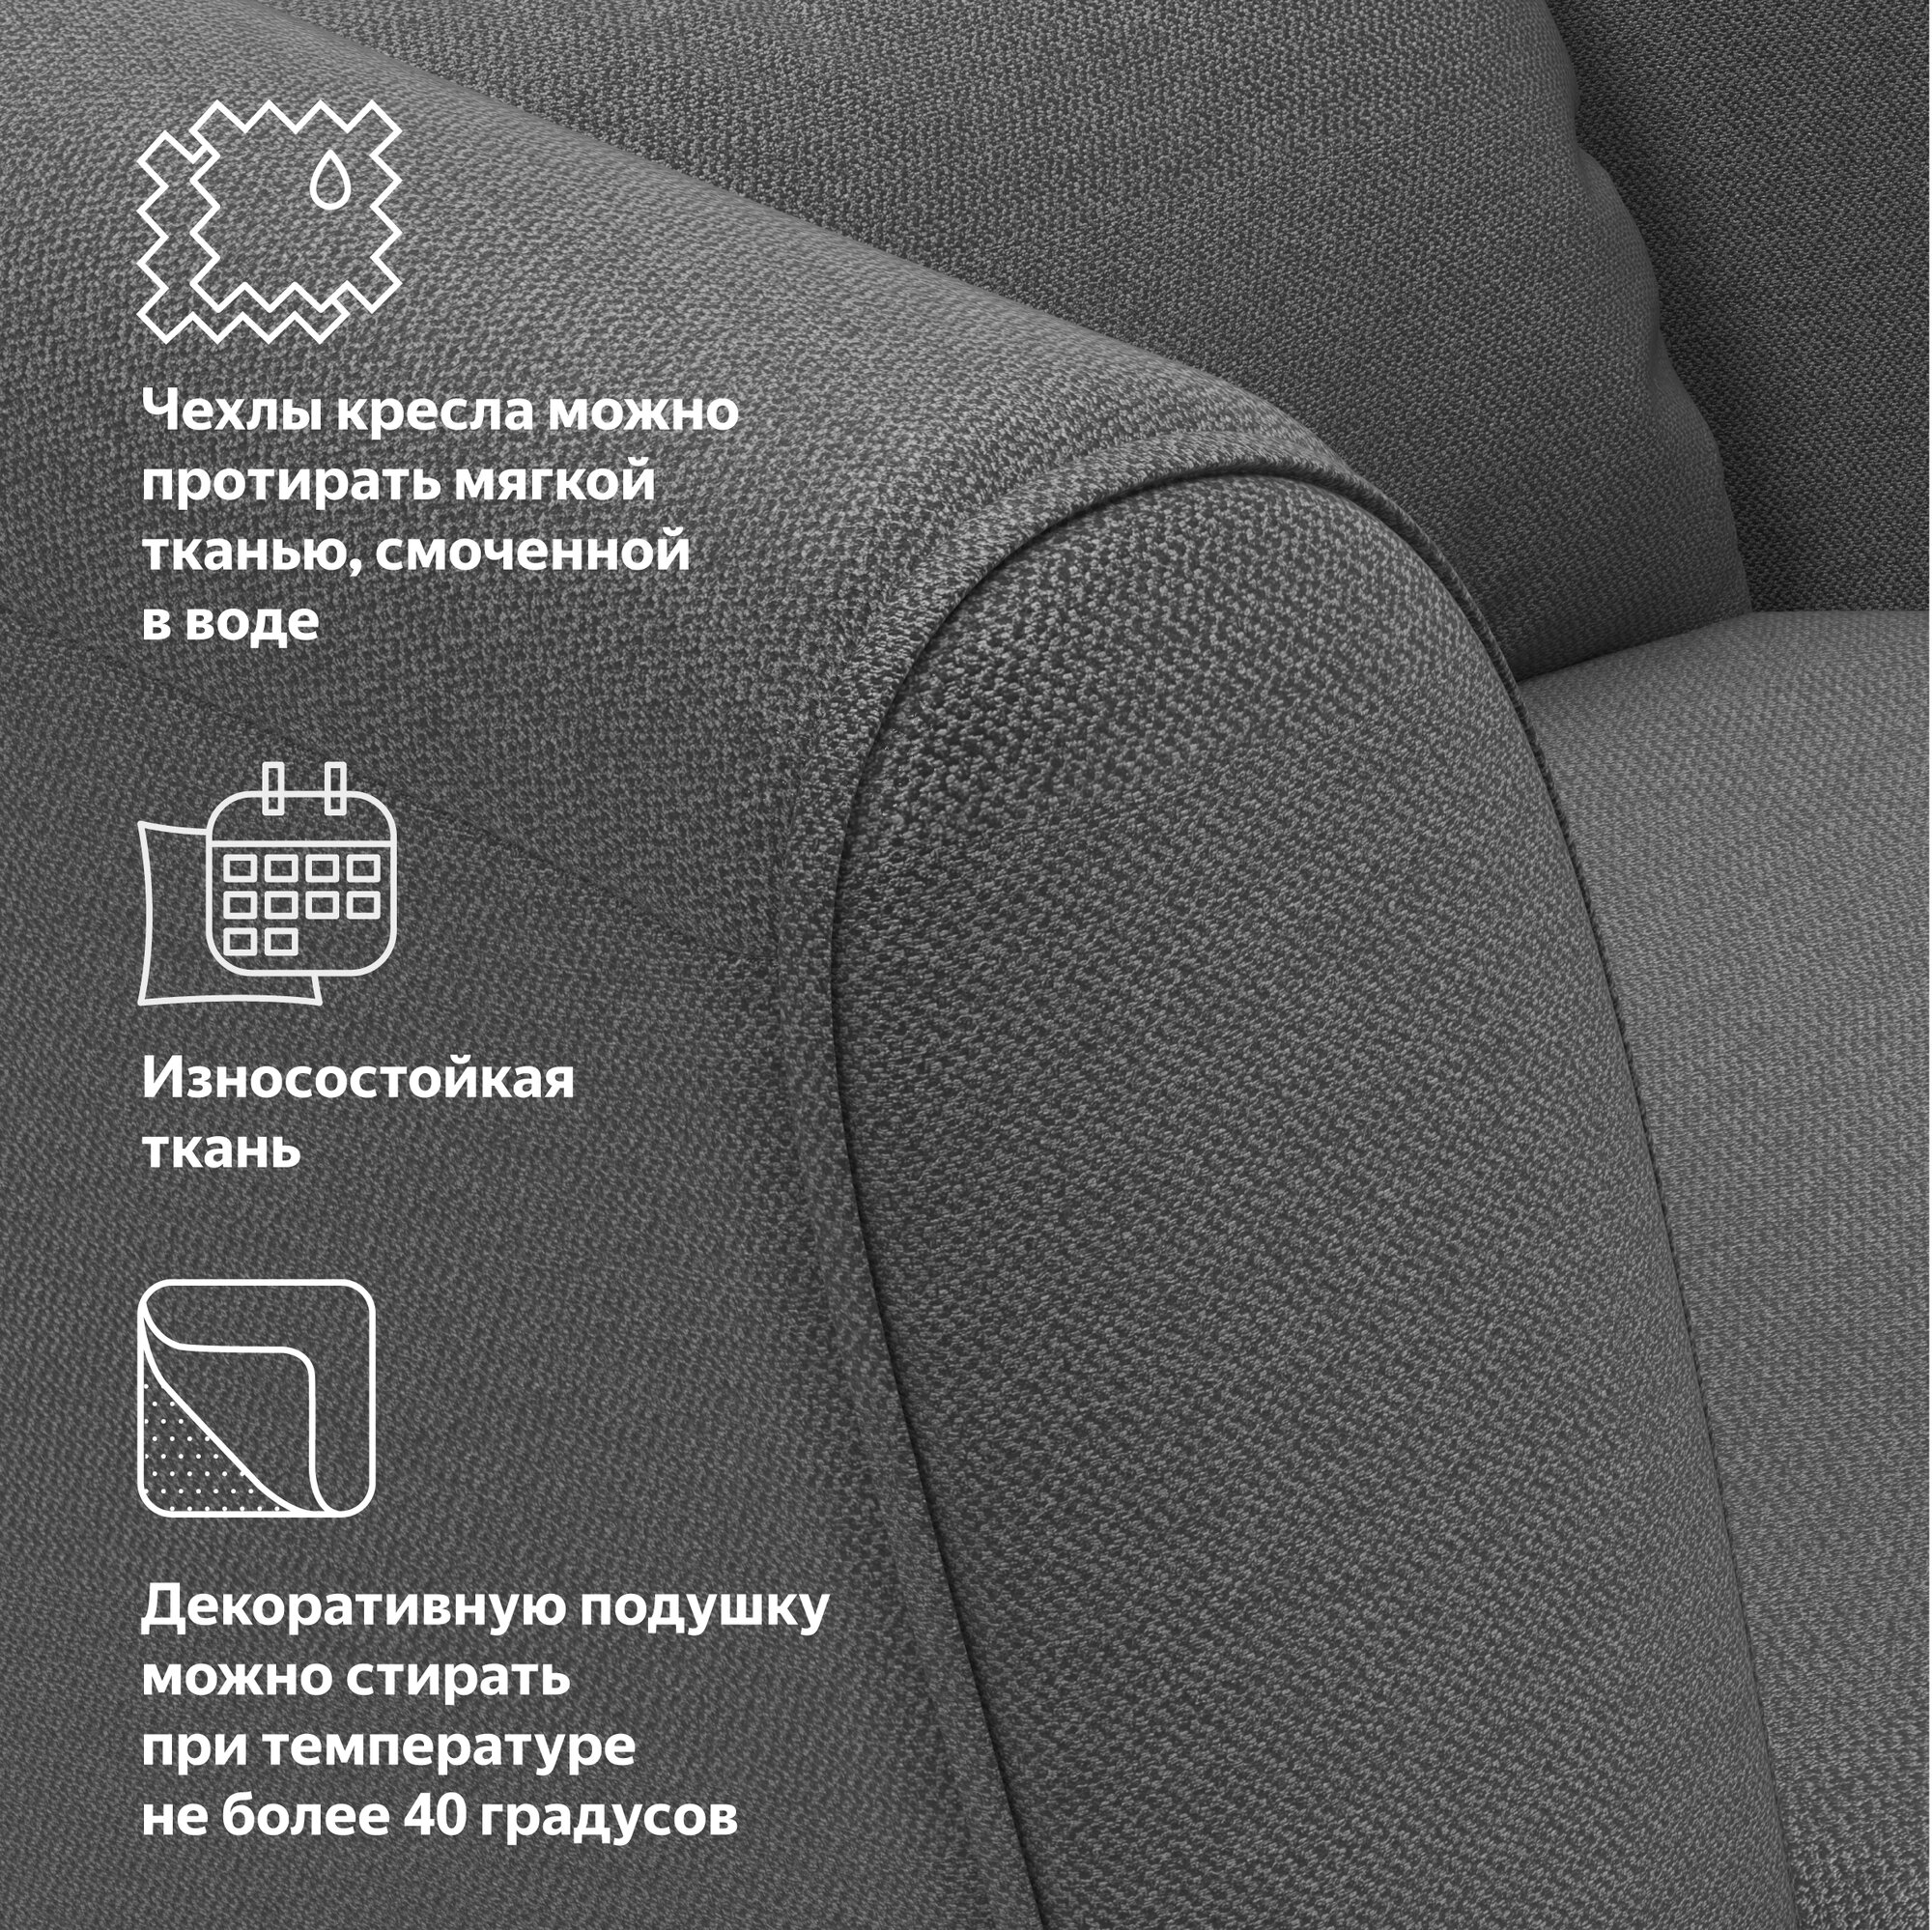 Кресло с декоративной подушкой Pragma Konda, обивка: текстиль, тёмно-серый